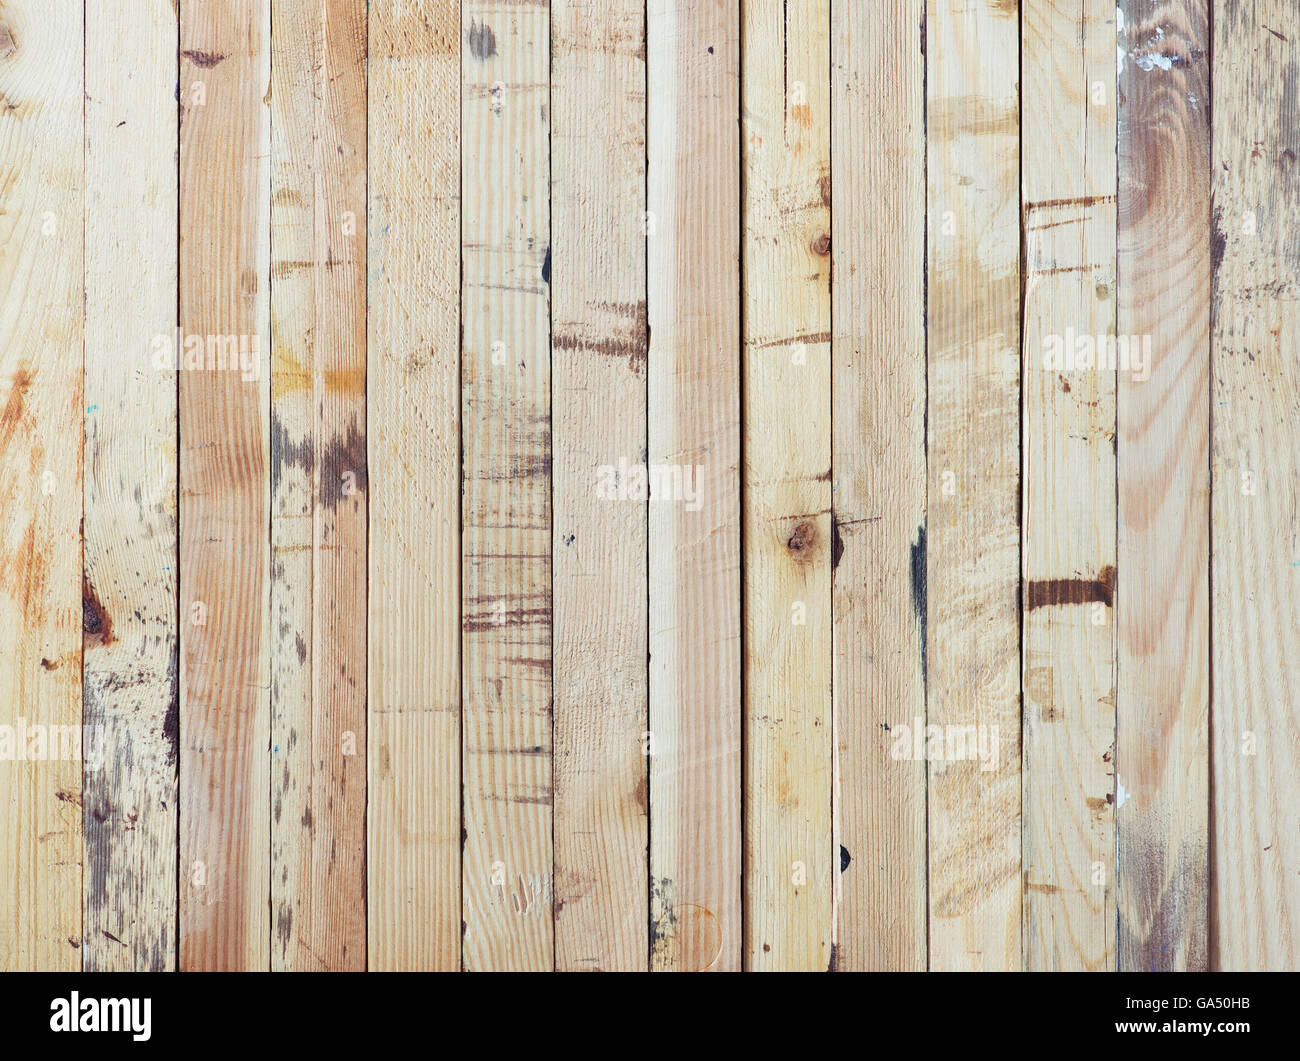 Pila di grezzo listelli di legno. Grungy texture di legno con macchie di vernice. Foto Stock